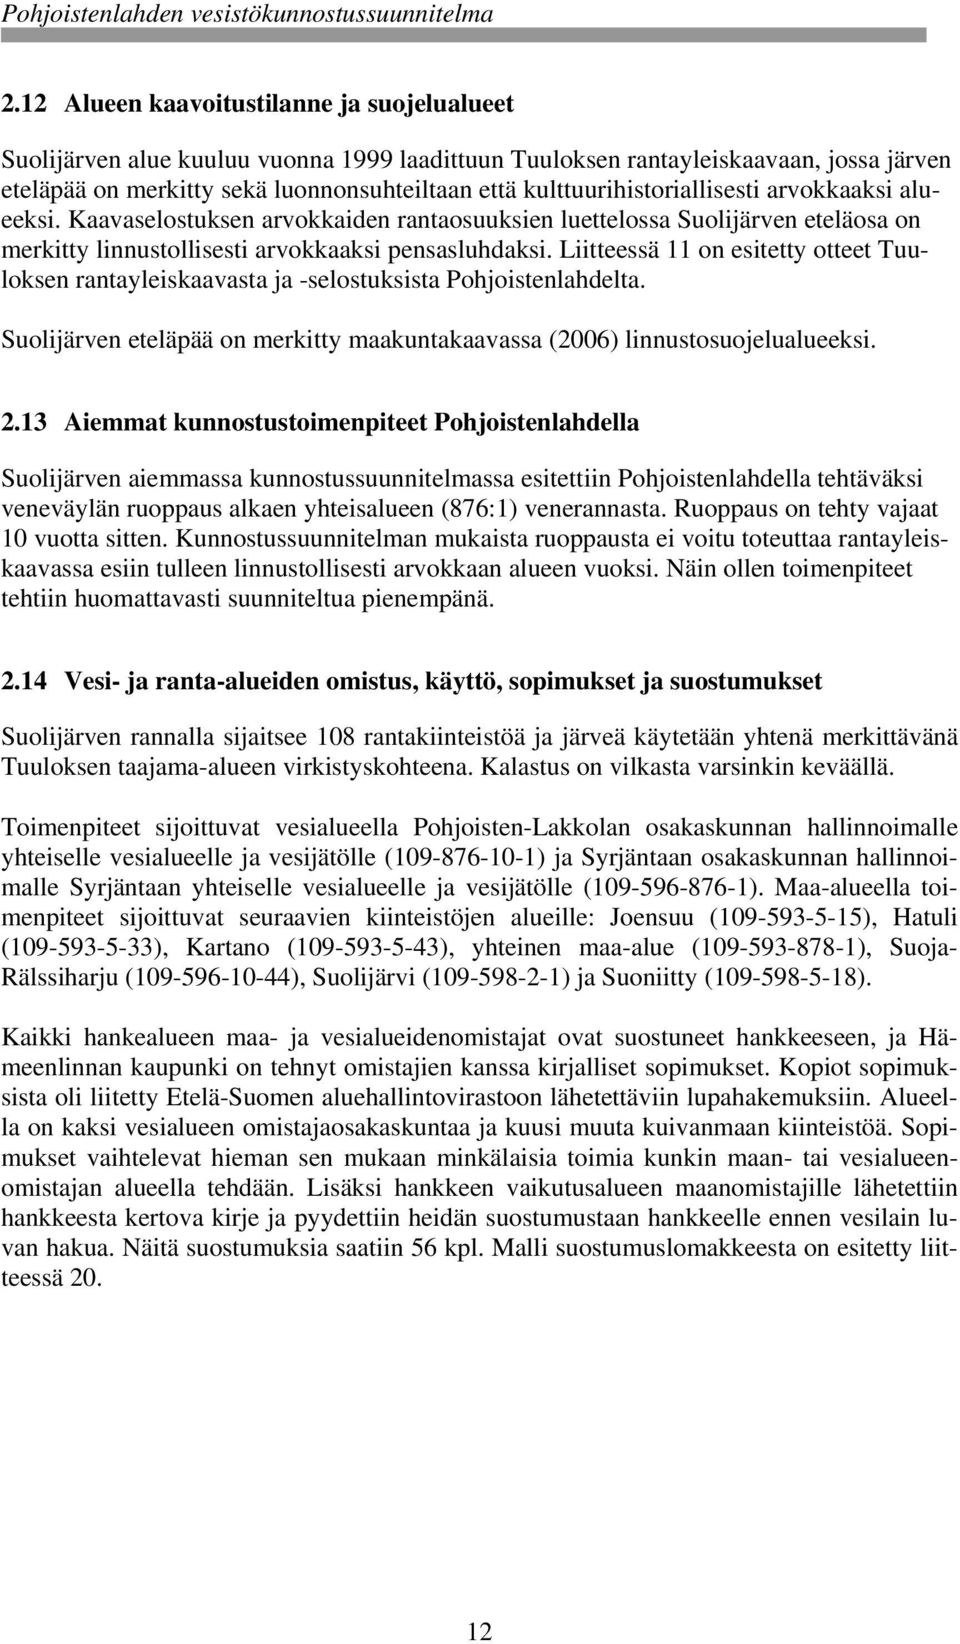 Liitteessä 11 on esitetty otteet Tuuloksen rantayleiskaavasta ja -selostuksista Pohjoistenlahdelta. Suolijärven eteläpää on merkitty maakuntakaavassa (2006) linnustosuojelualueeksi. 2.